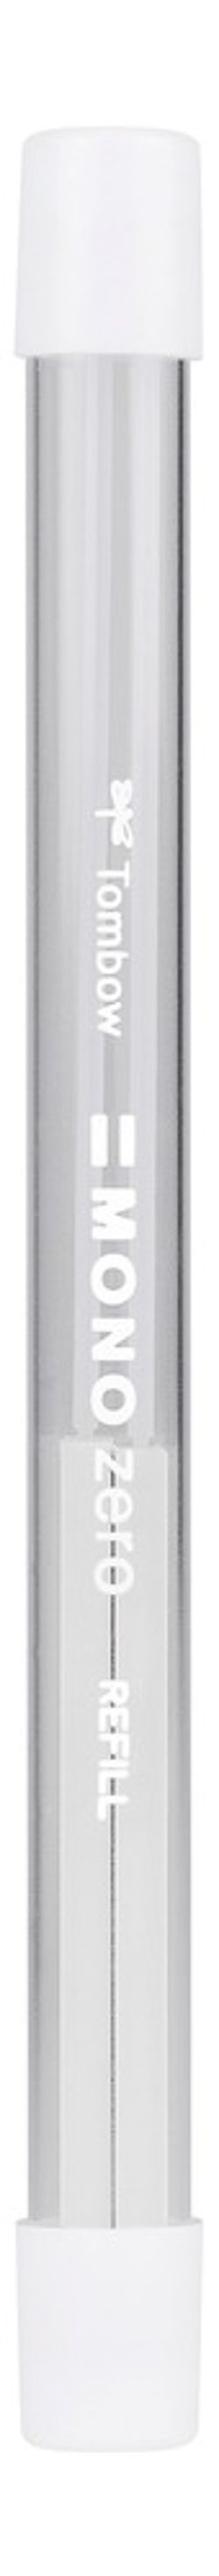 Stylo-gomme MONO zéro classique pointe rectangulaire blanc/bleu/noir + recharge